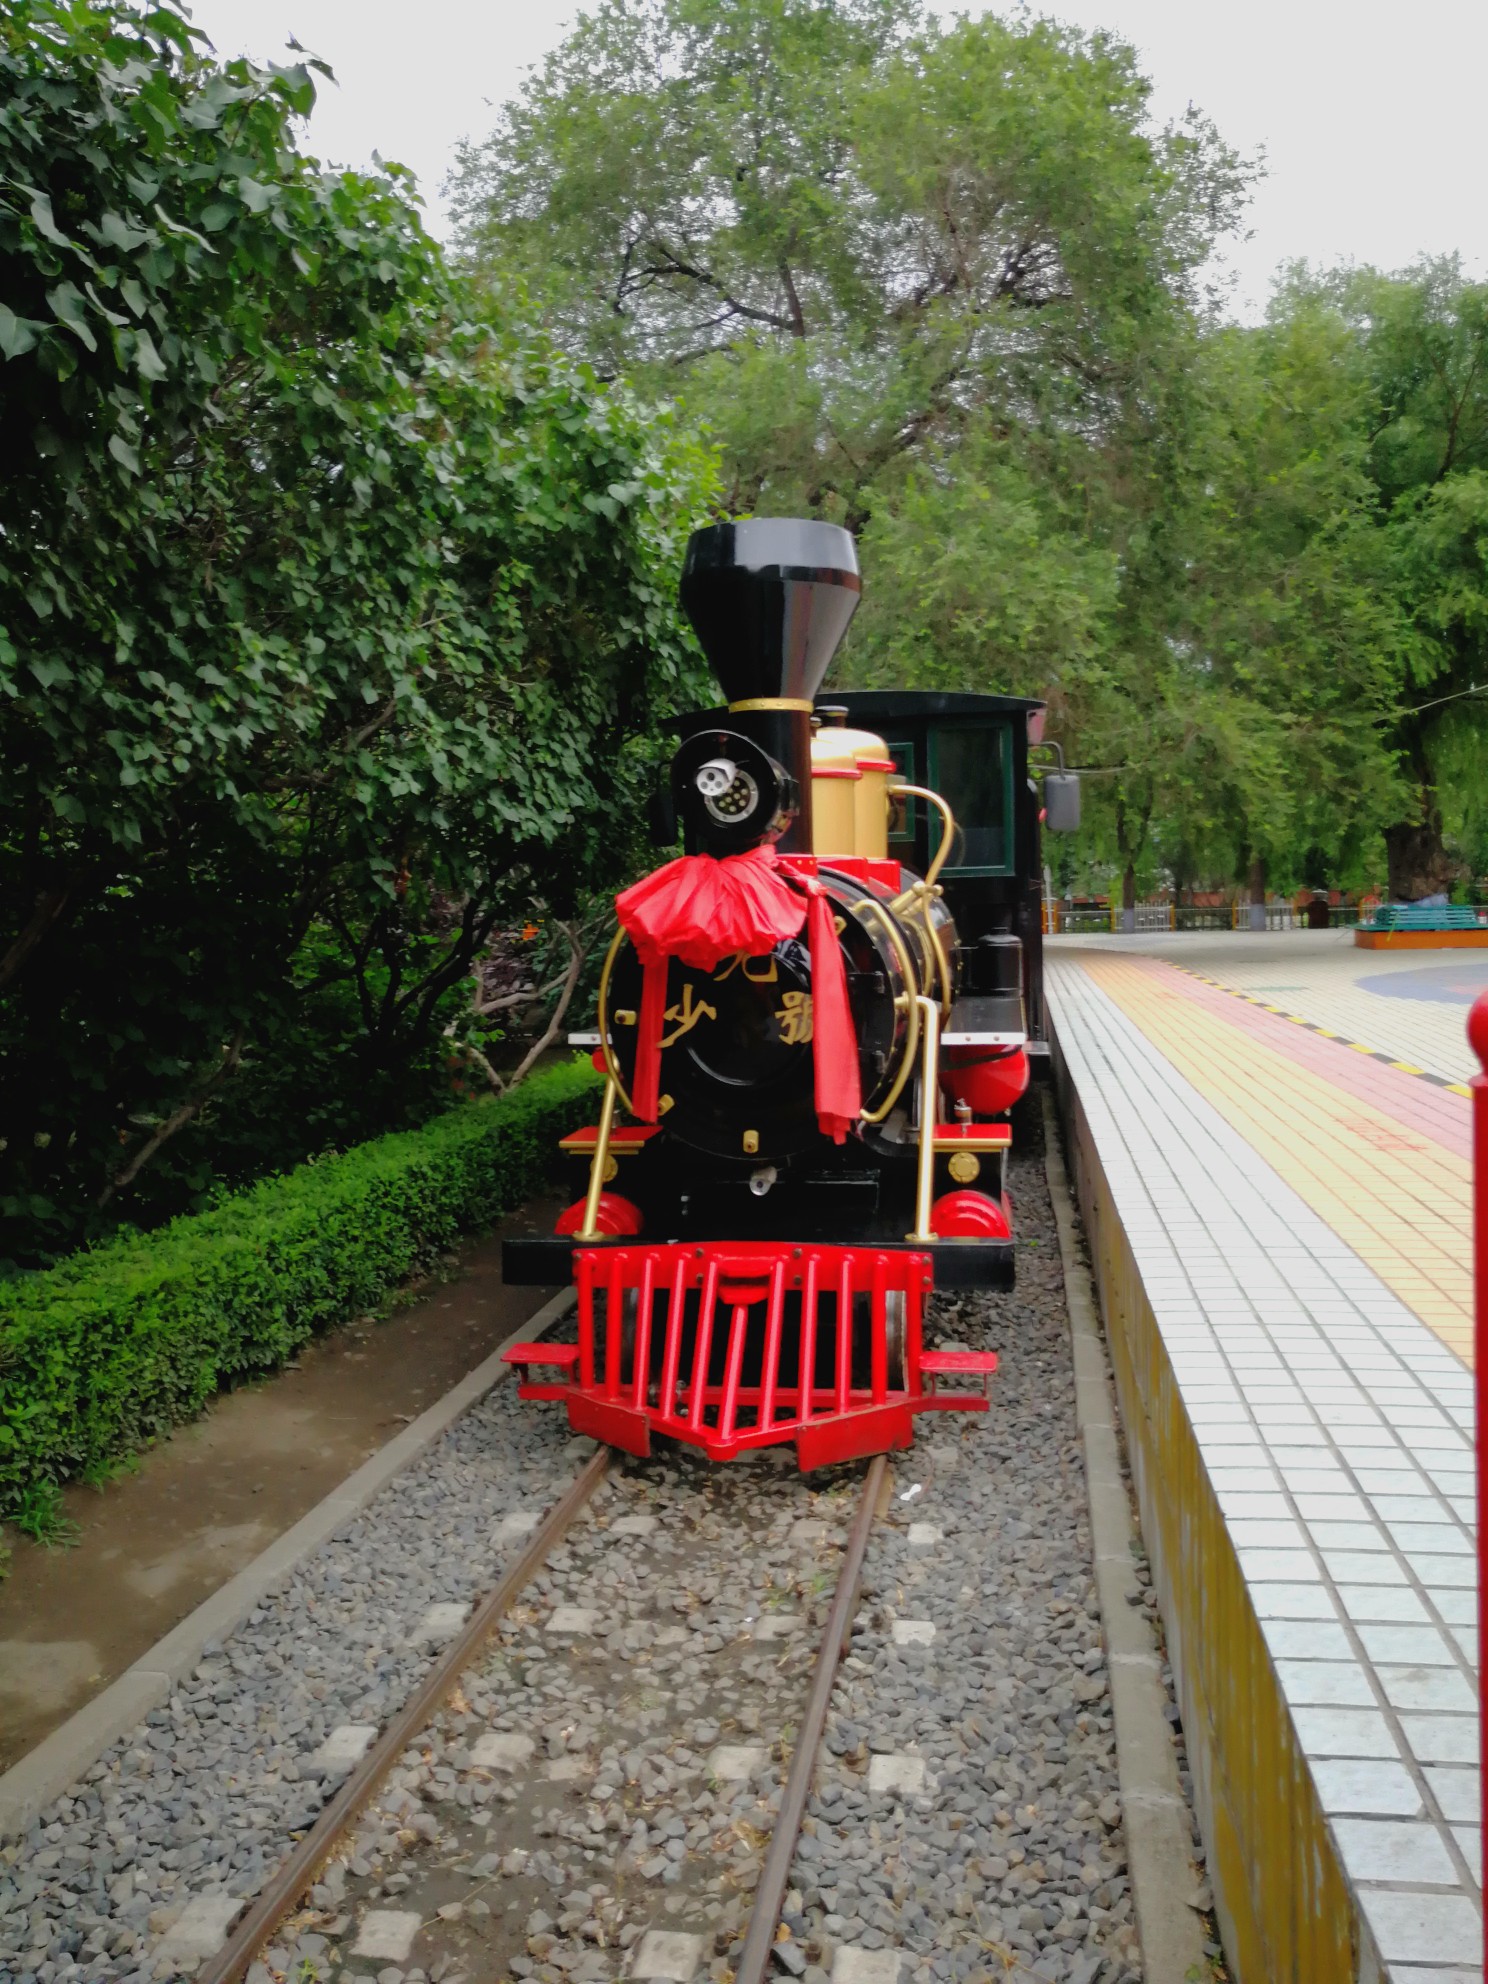 哈尔滨儿童公园小火车图片